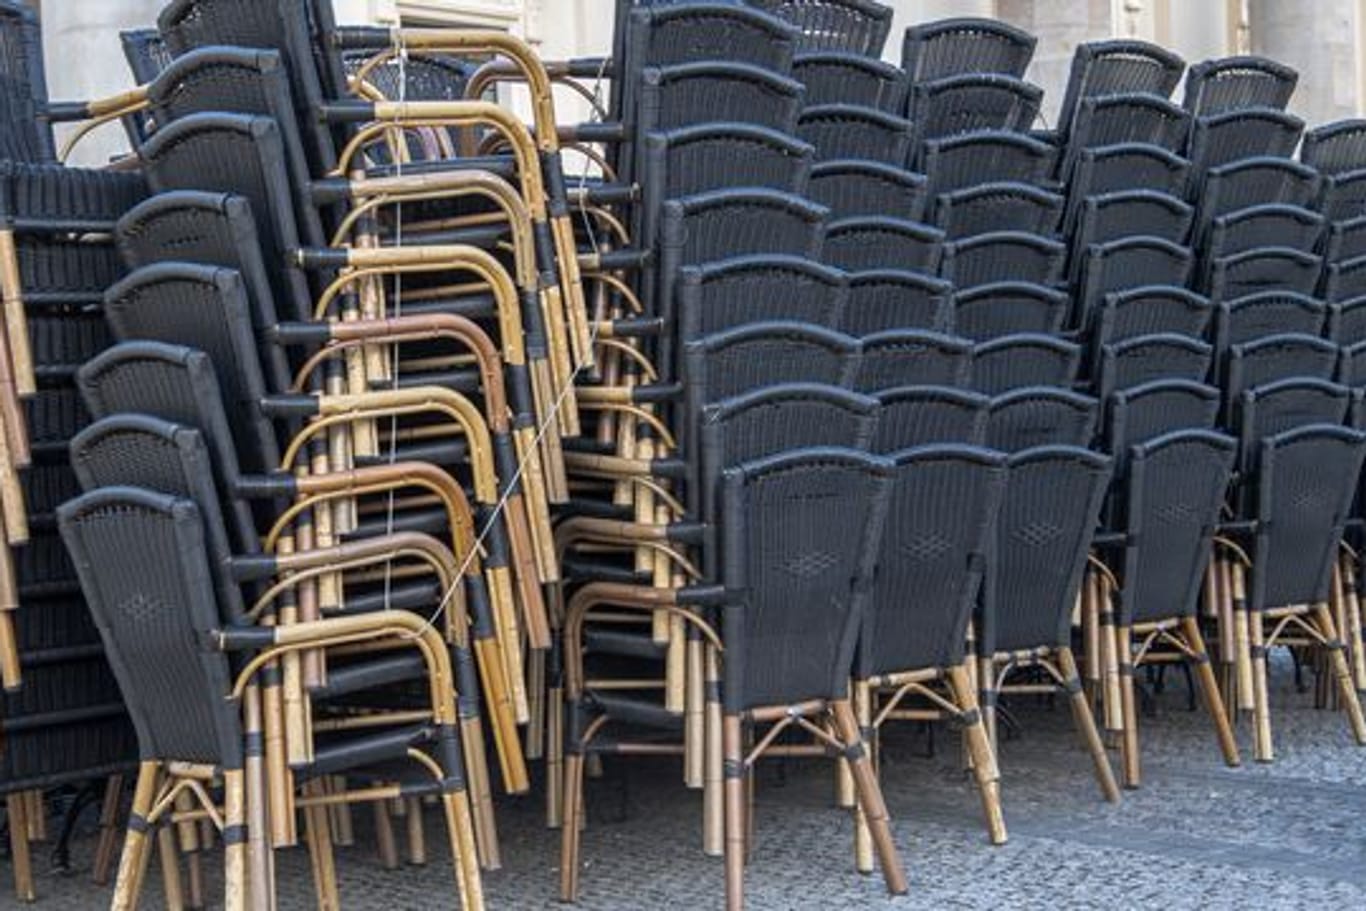 Zusammengestellte Stühle stehen vor einem gastronomischen Betrieb in Potsdam.